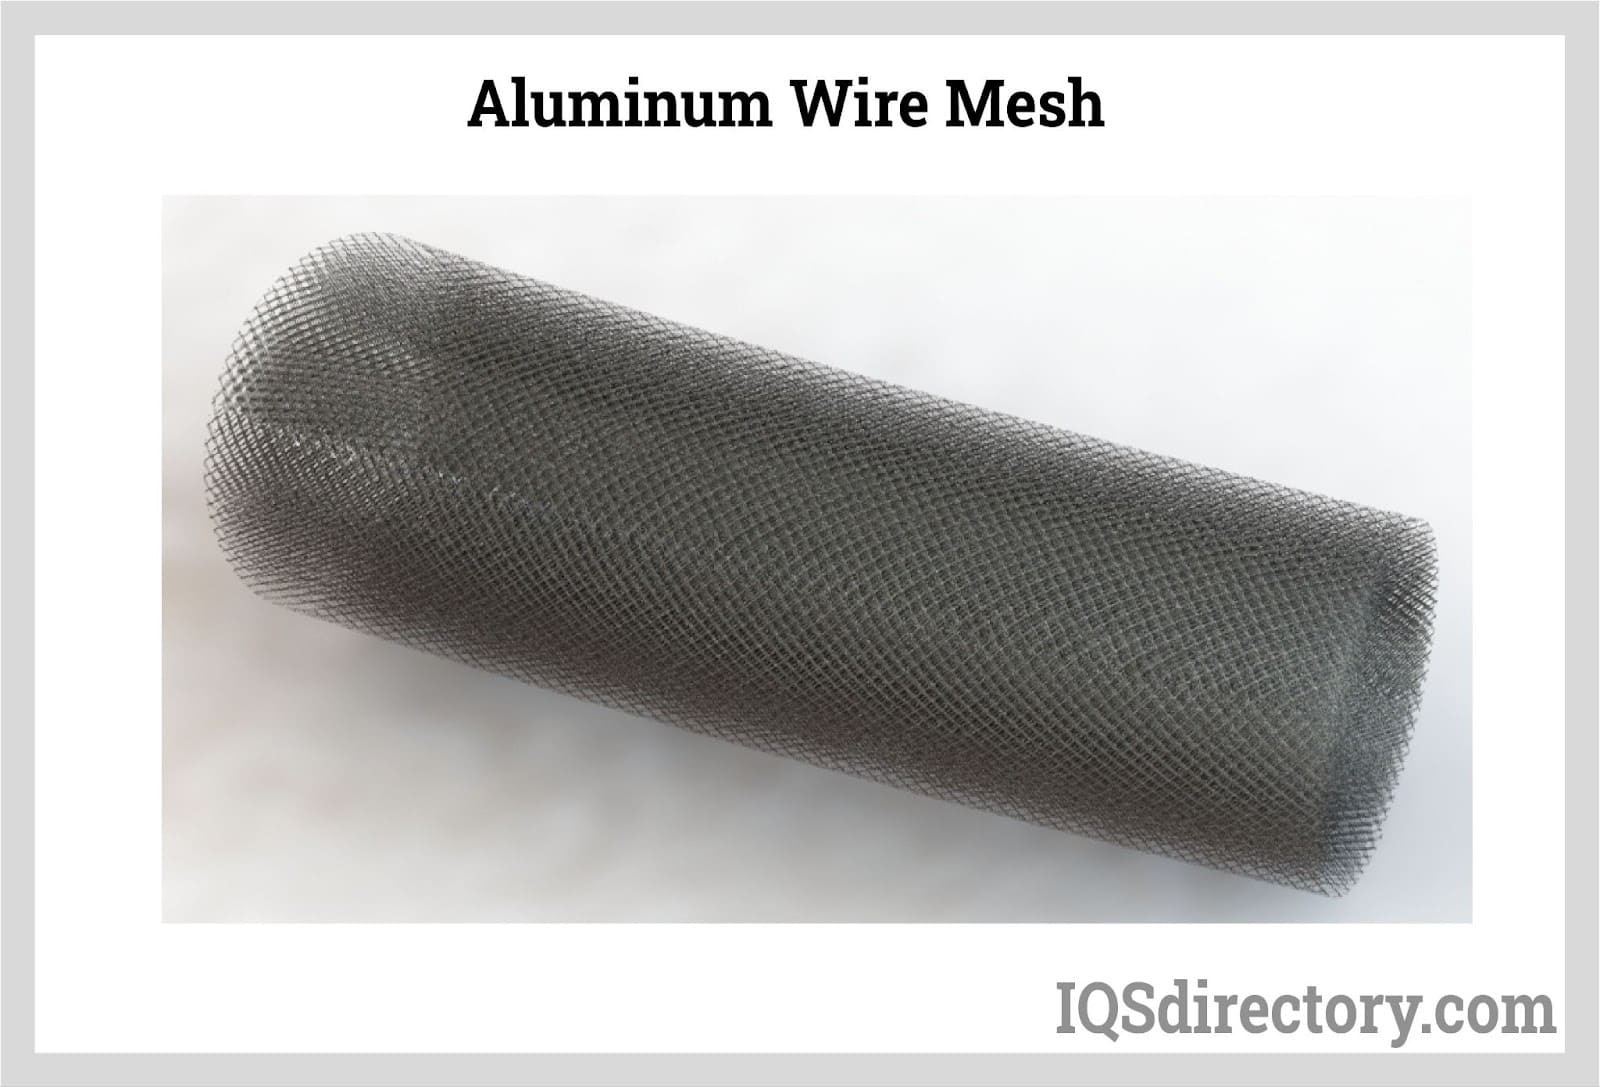 Aluminum Wire Mesh